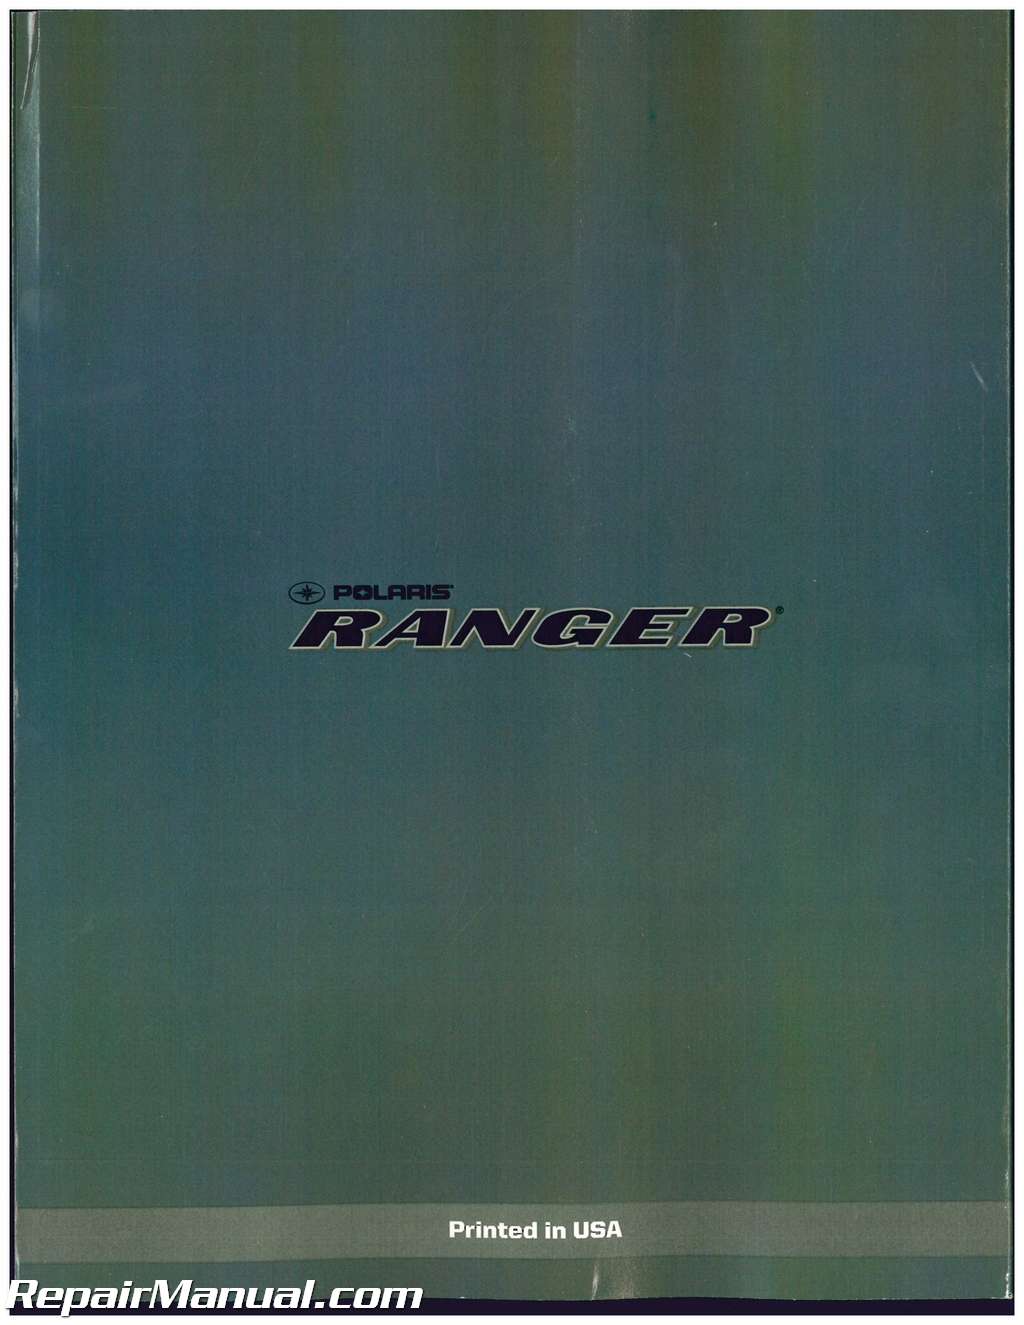 2015 Polaris Ranger 850 Xp Service Manual